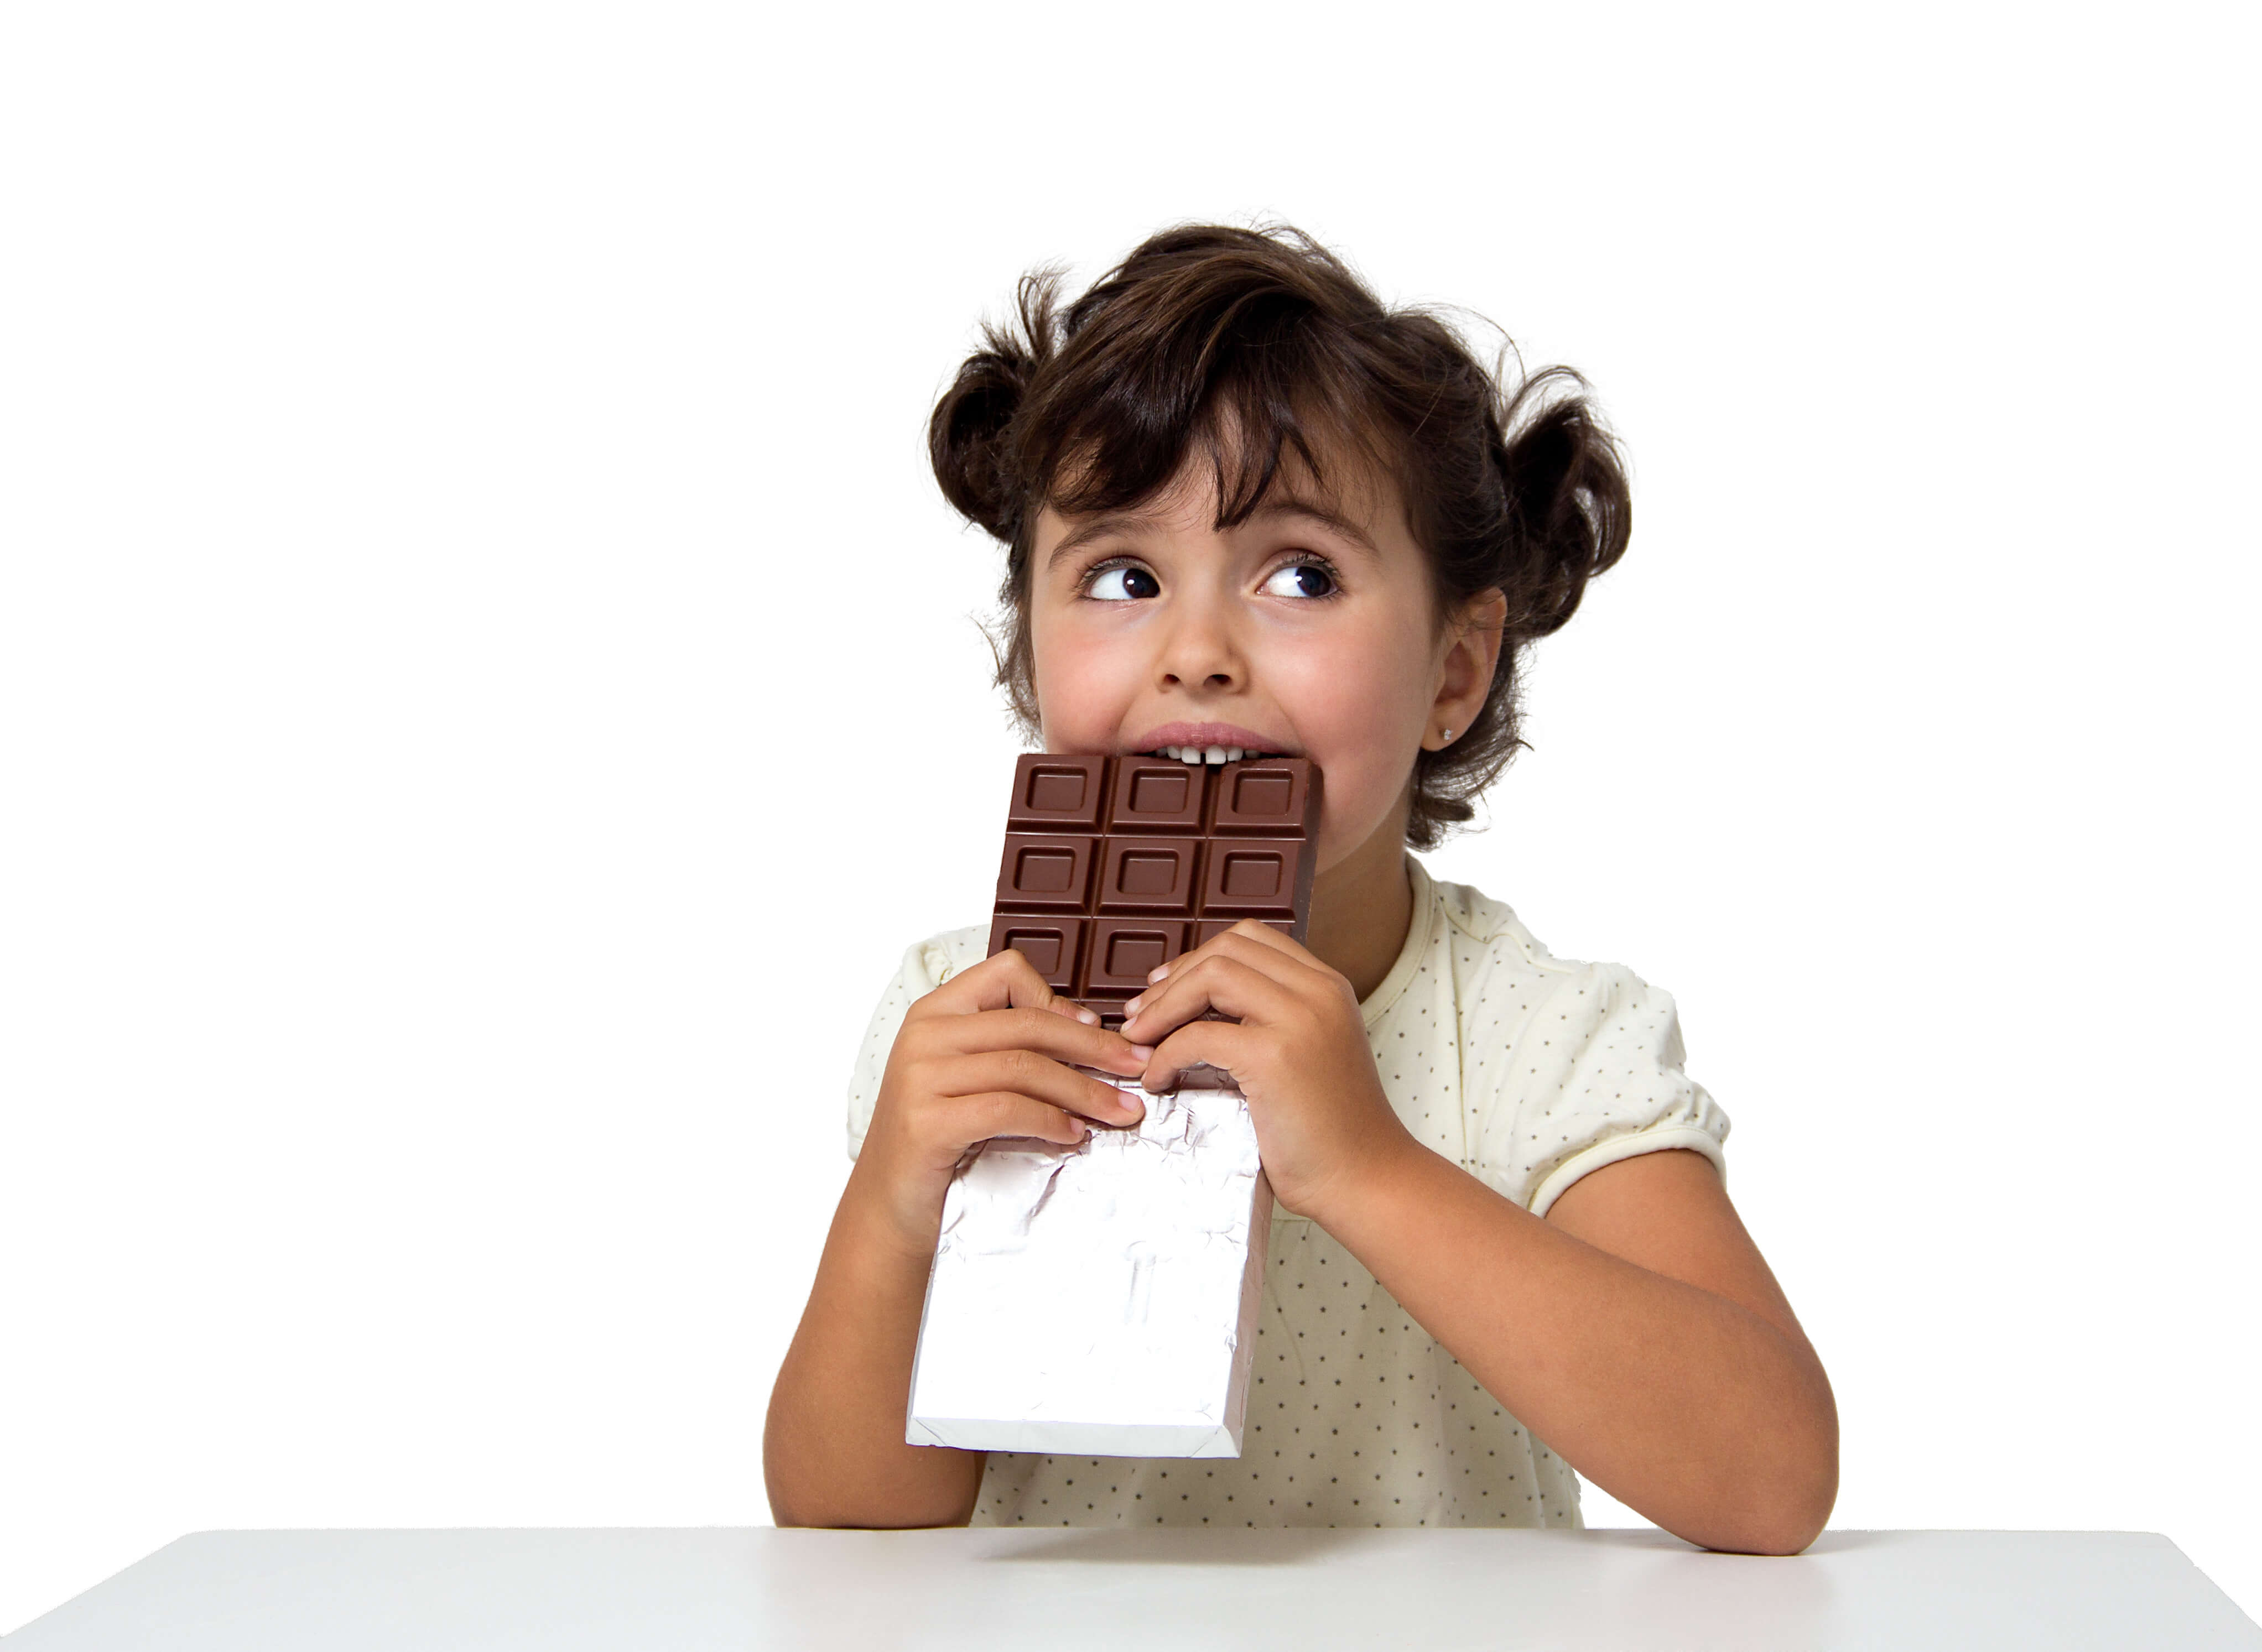 Дядя тянет руку в руке шоколадка. Девушка с шоколадкой. Девочка с шоколадкой. Шоколадки для детей.